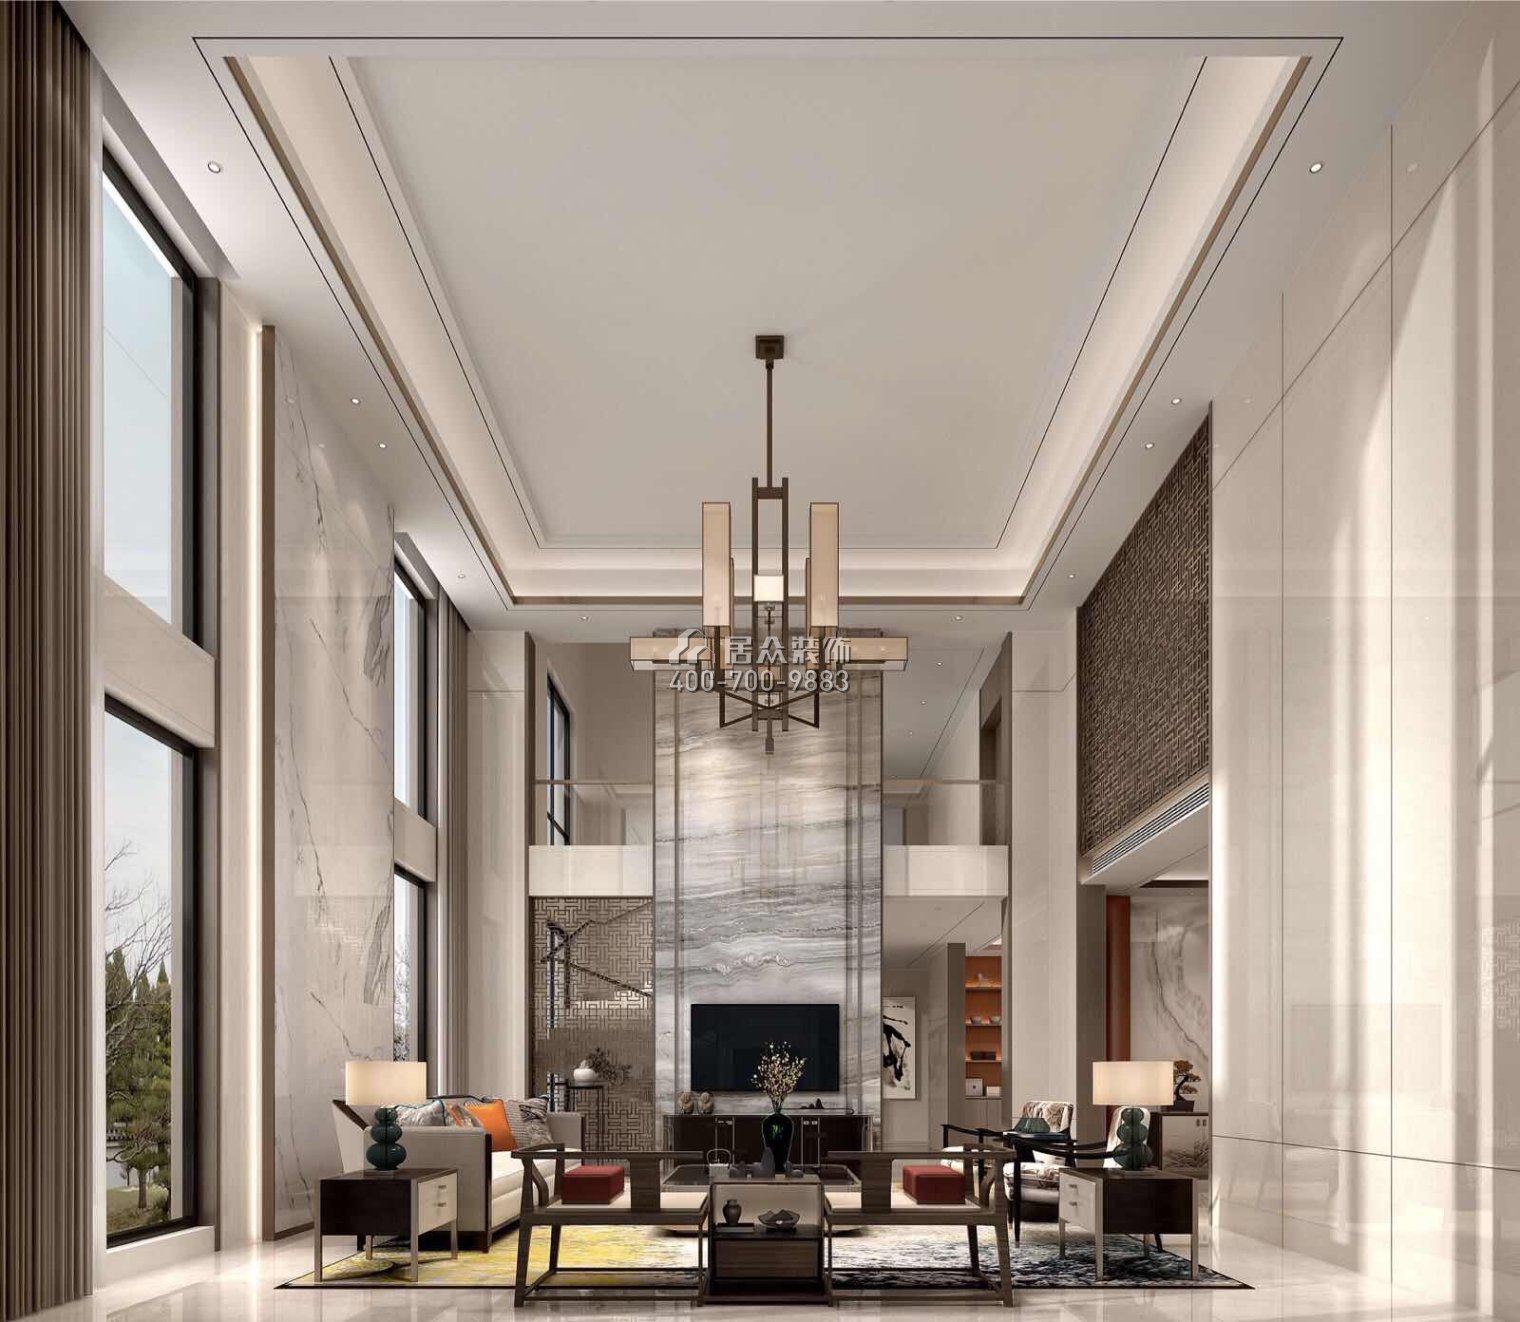 丽水佳园480平方米中式风格别墅户型客厅装修效果图